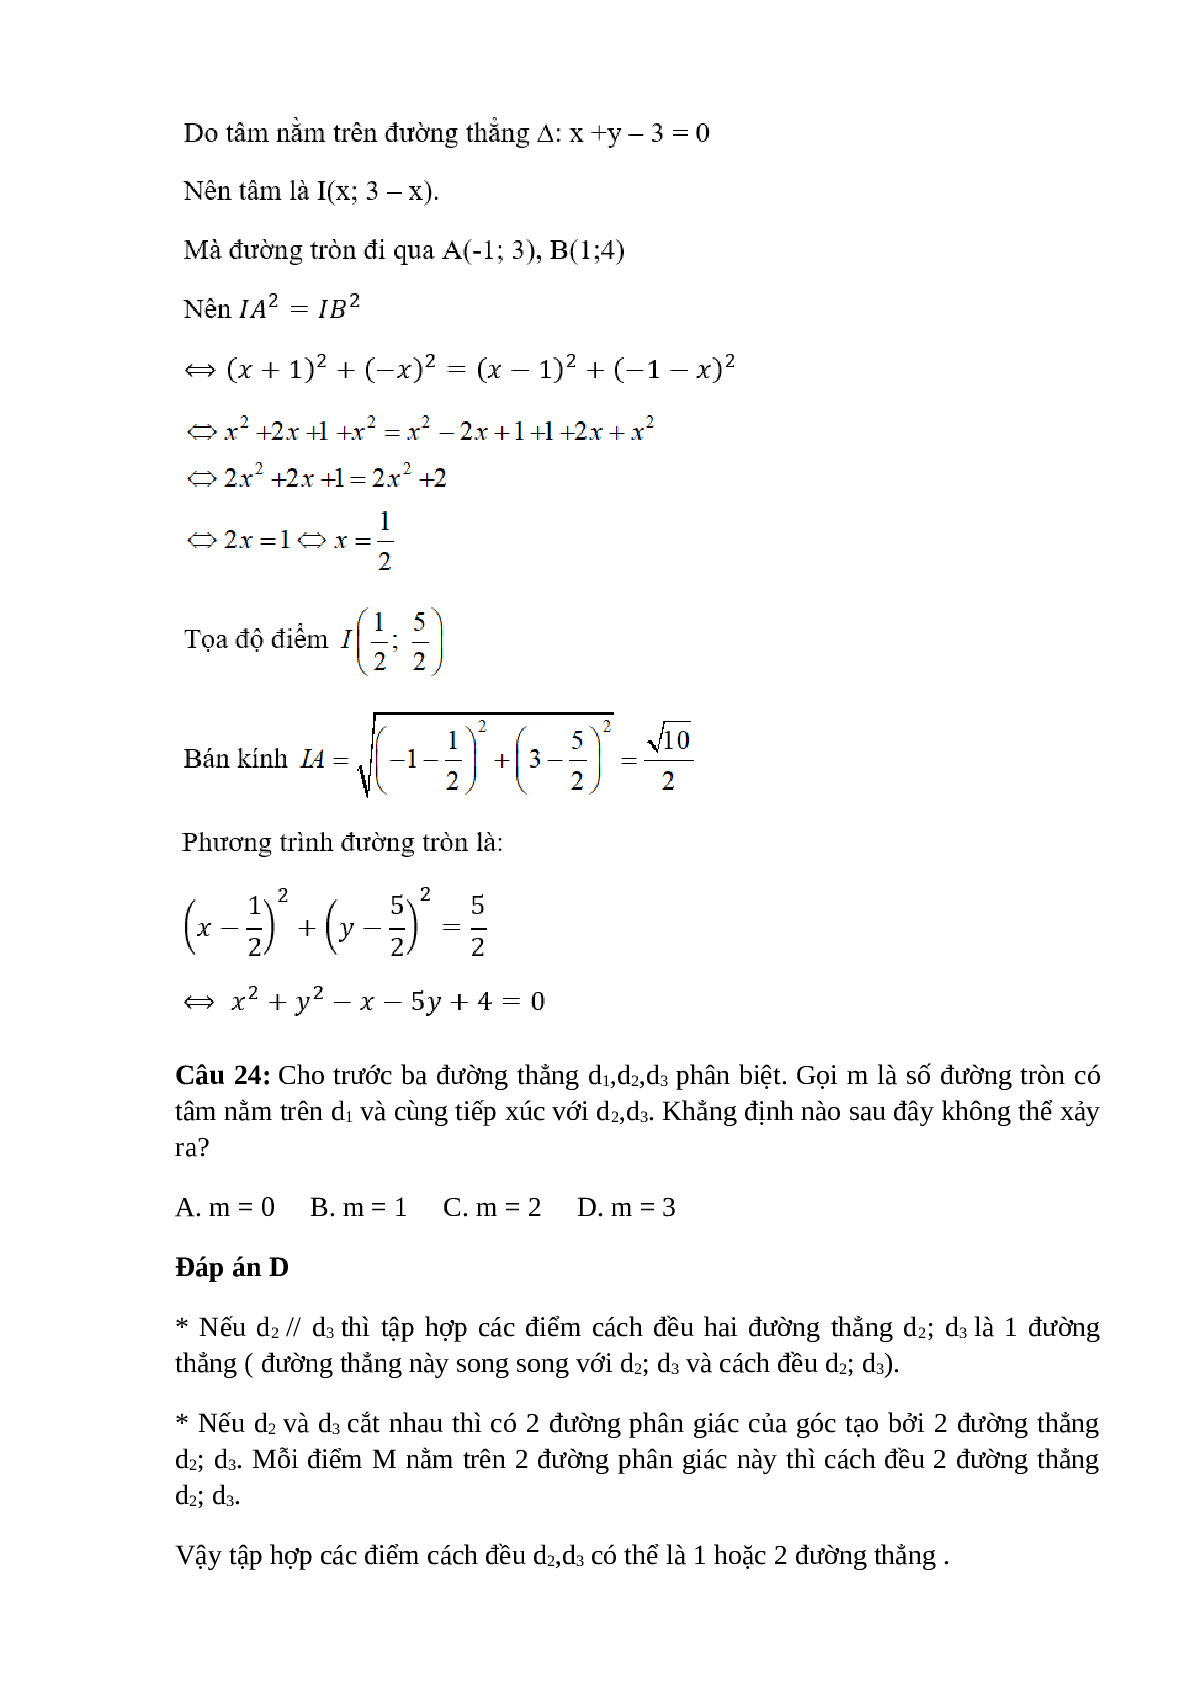 Trắc nghiệm Phương trình đường tròn (phần 2) có đáp án – Toán lớp 10 (trang 6)